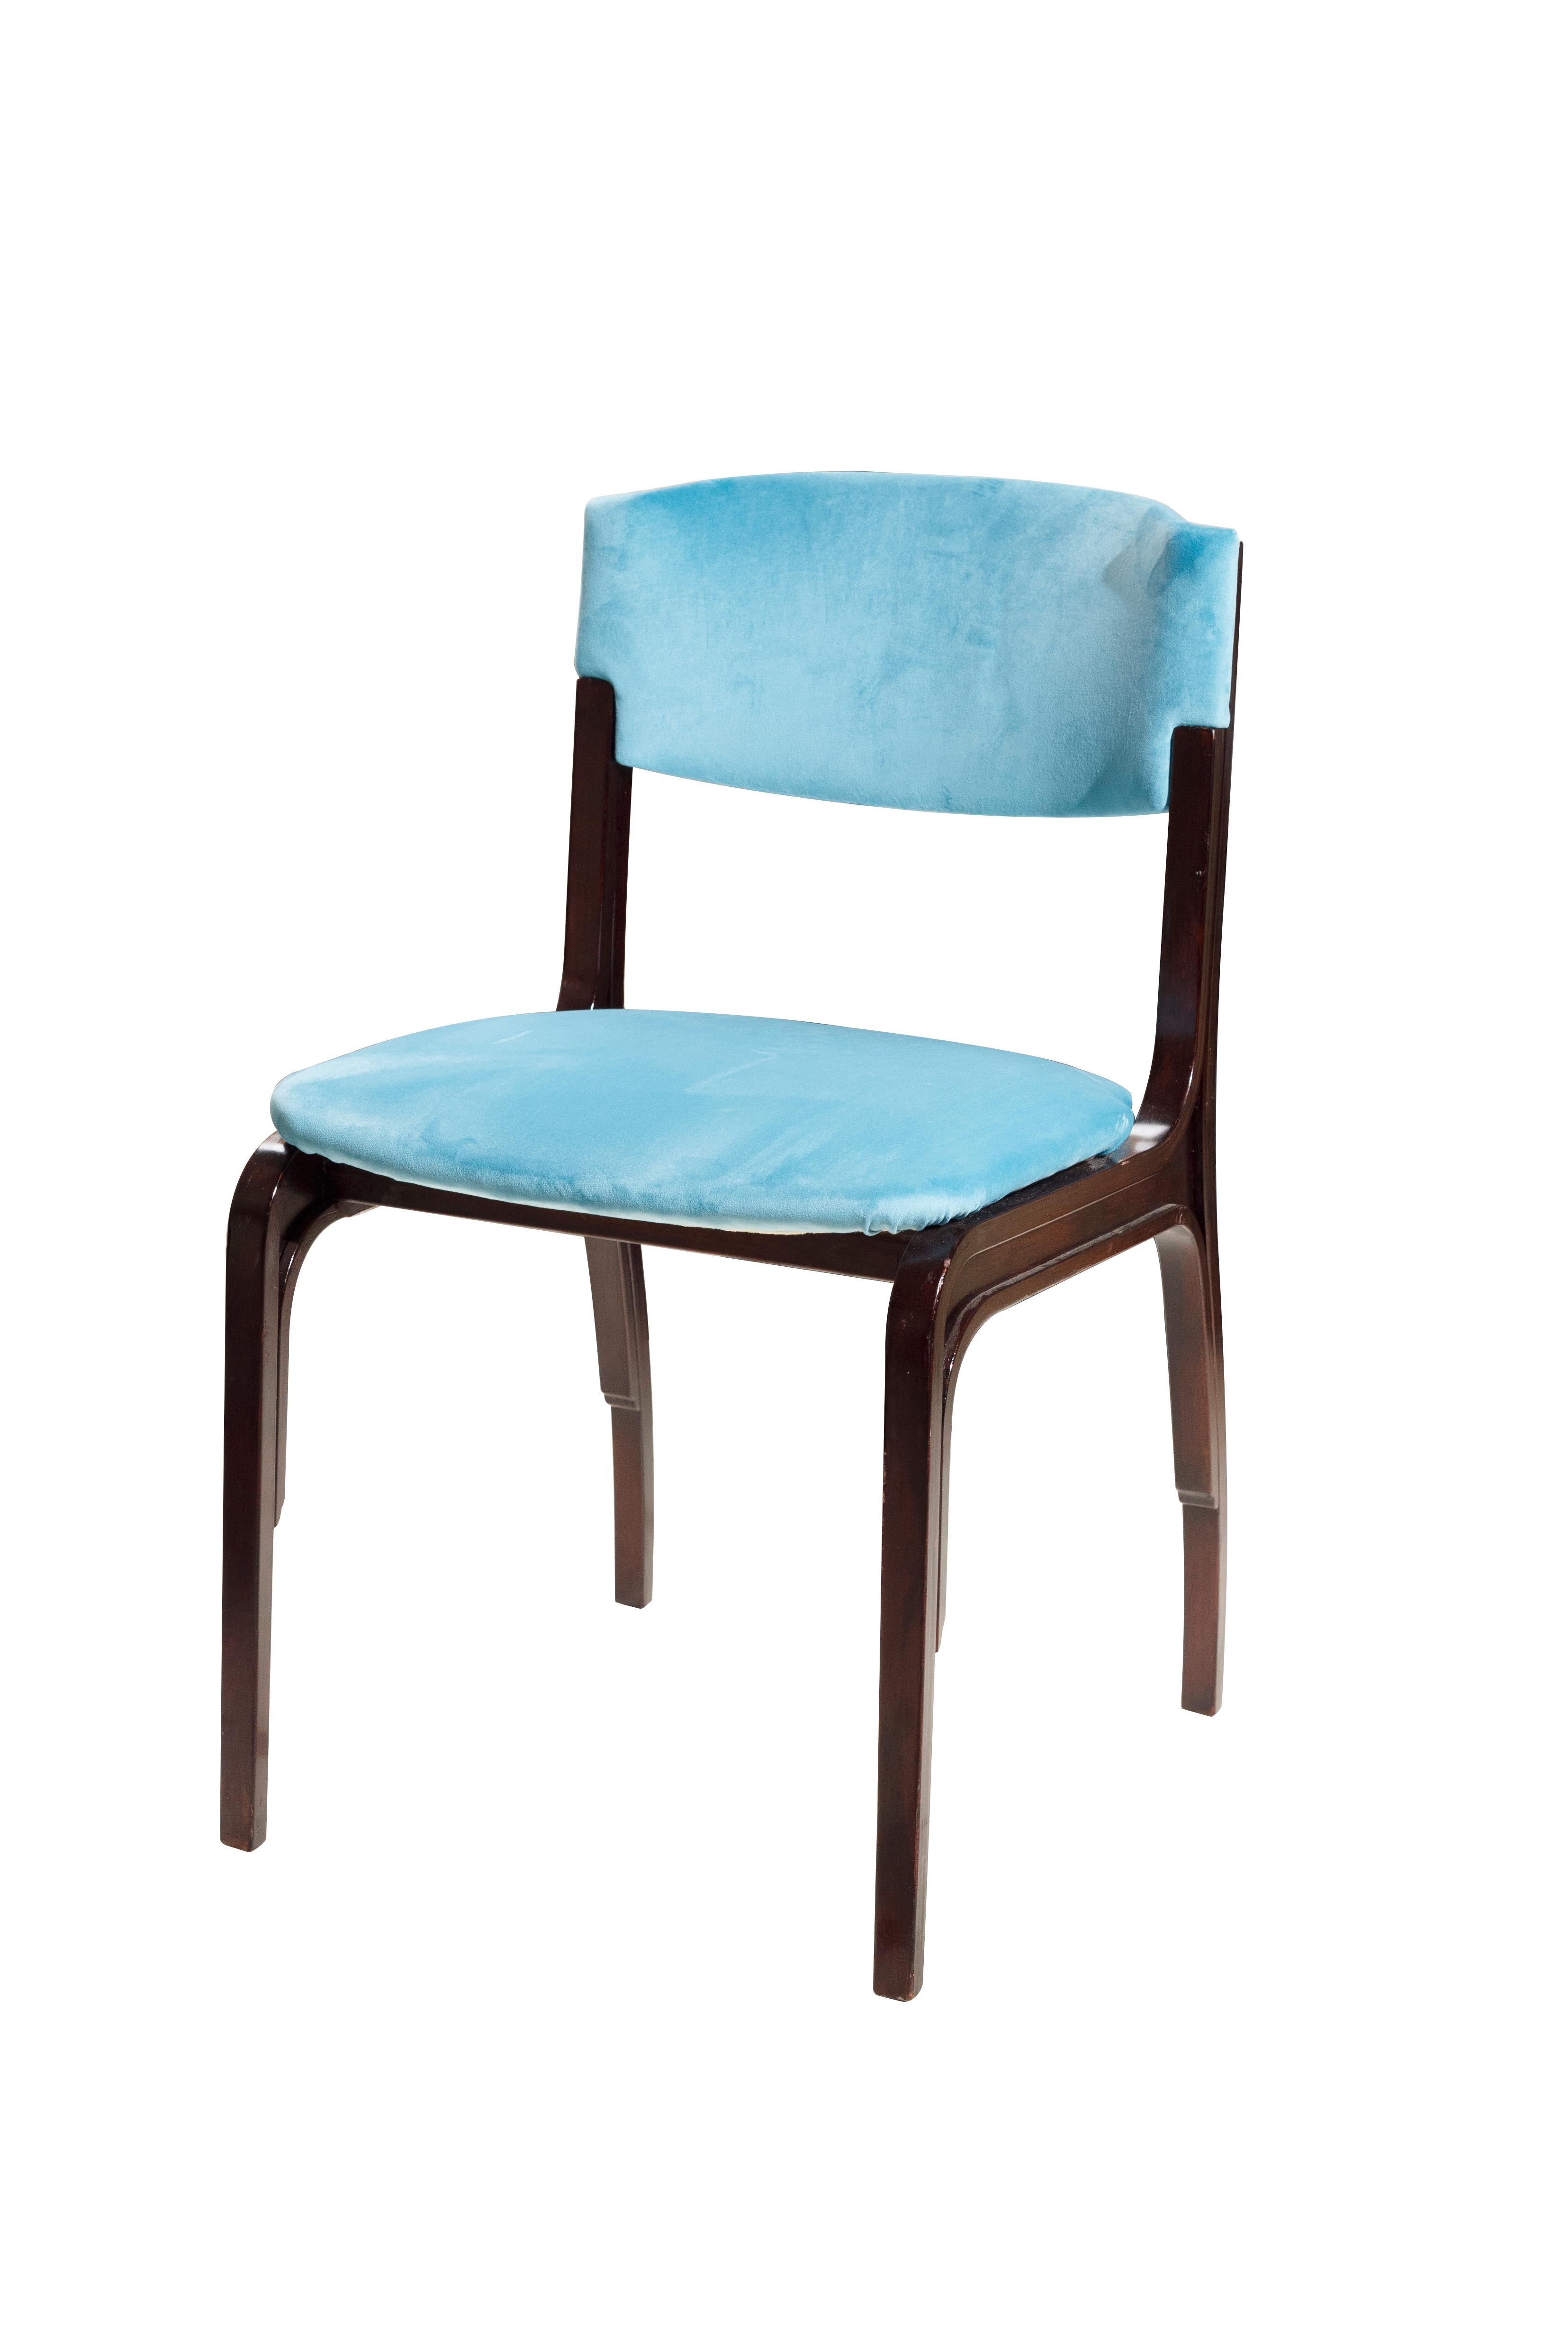 Gianfranco Frattini 5 sedie in velluto blu Mid-Century Modern. Gianfranco Frattini è un architetto e designer italiano che ha studiato alla scuola di Gio Ponti a Milano, seguendo le orme della generazione che ha formato il movimento del design degli